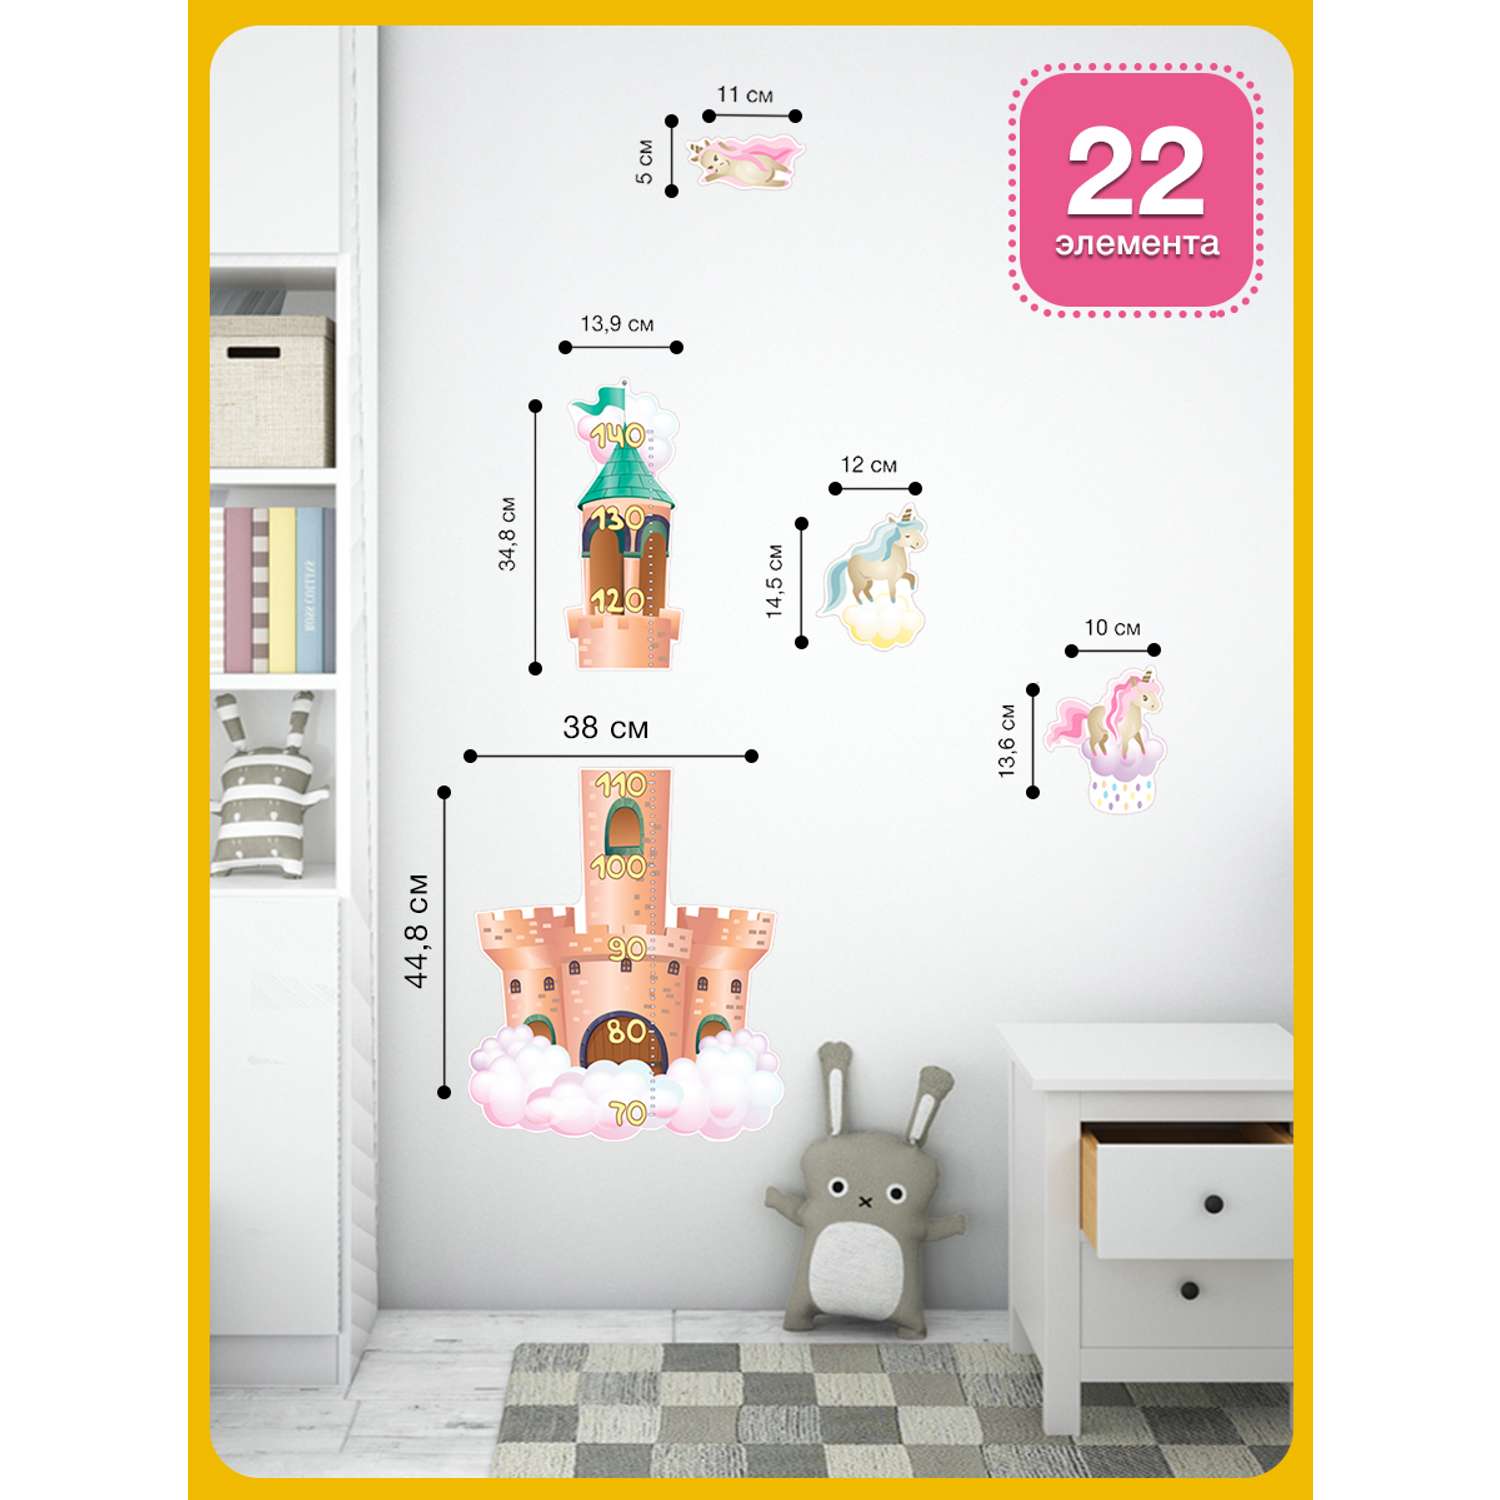 Наклейка ростомер ГК Горчаков в детскую комнату дочке с рисунком замок принцессы для декора - фото 3